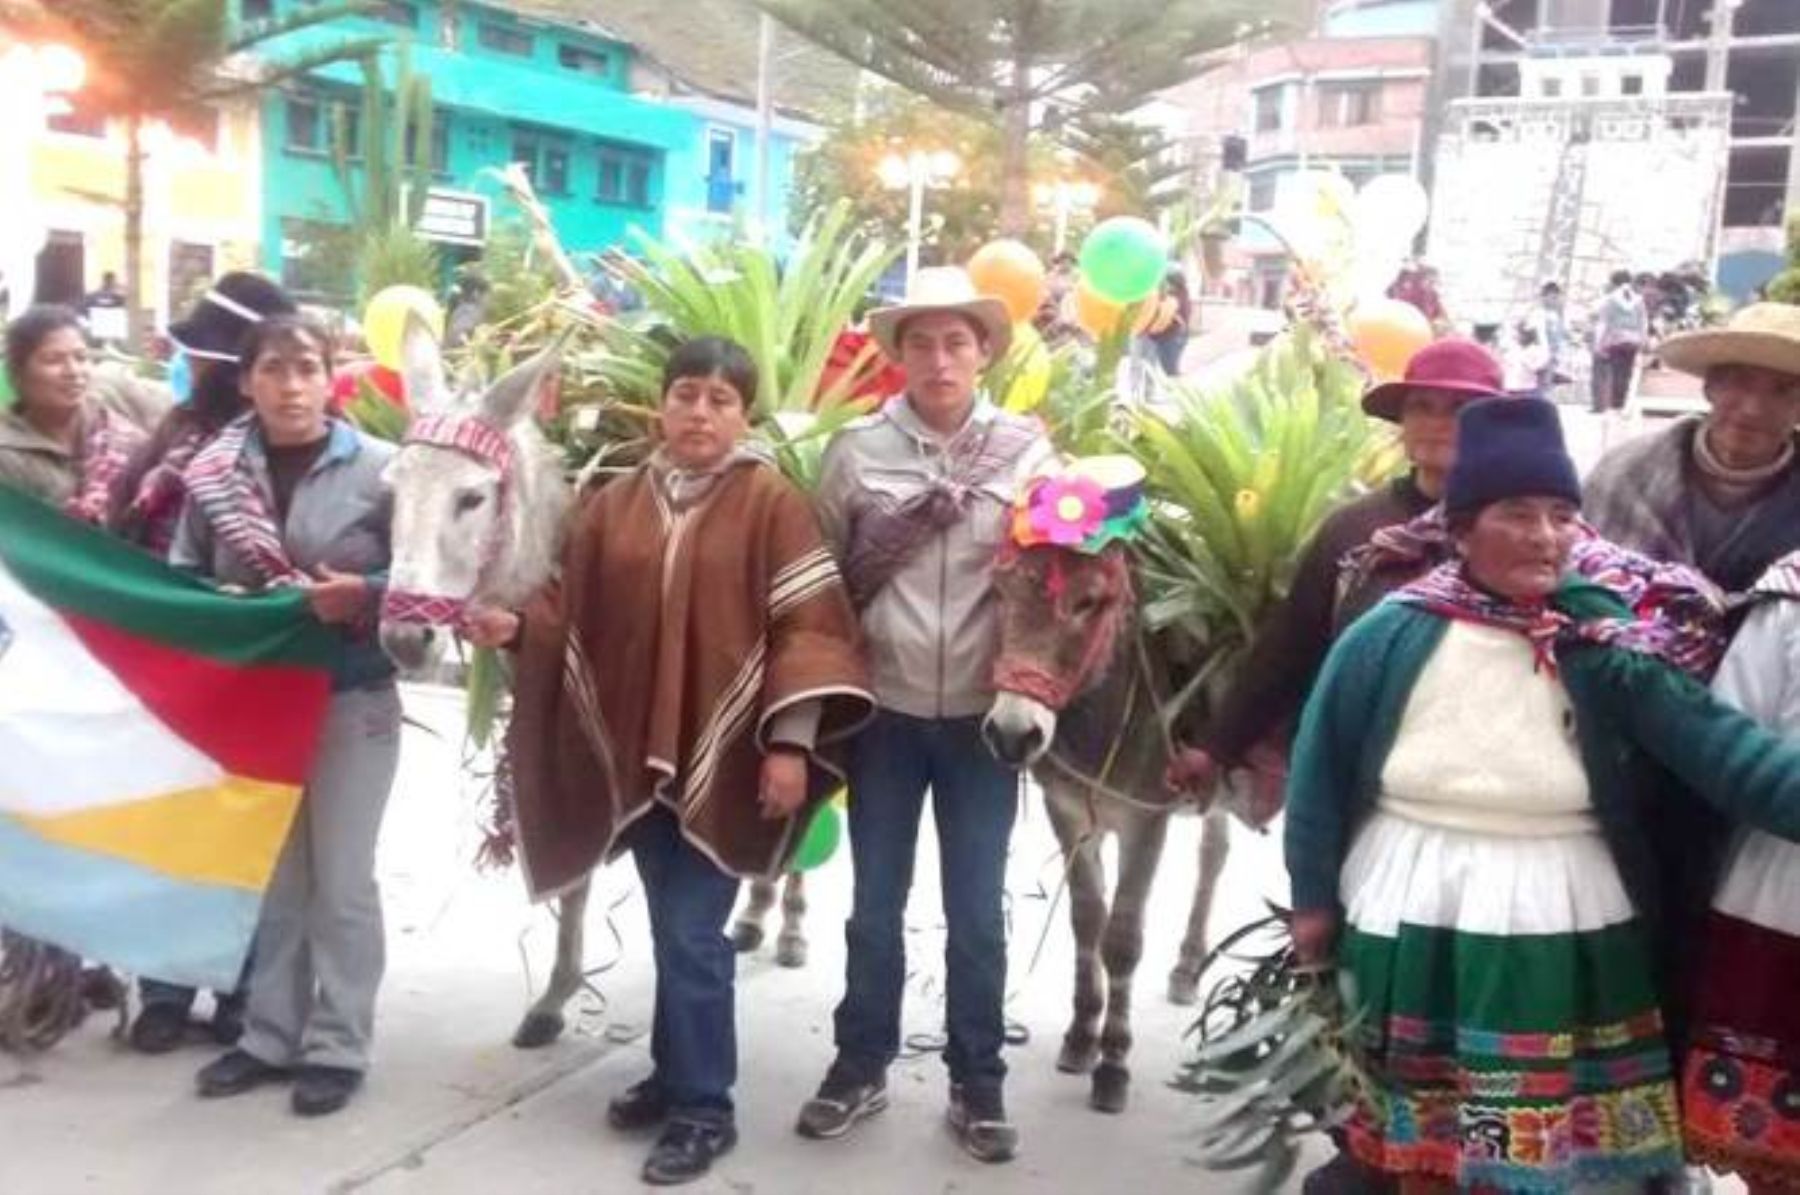 El paseo de weglosh, plantas llevadas por los burros es una tradición en Paucartambo.